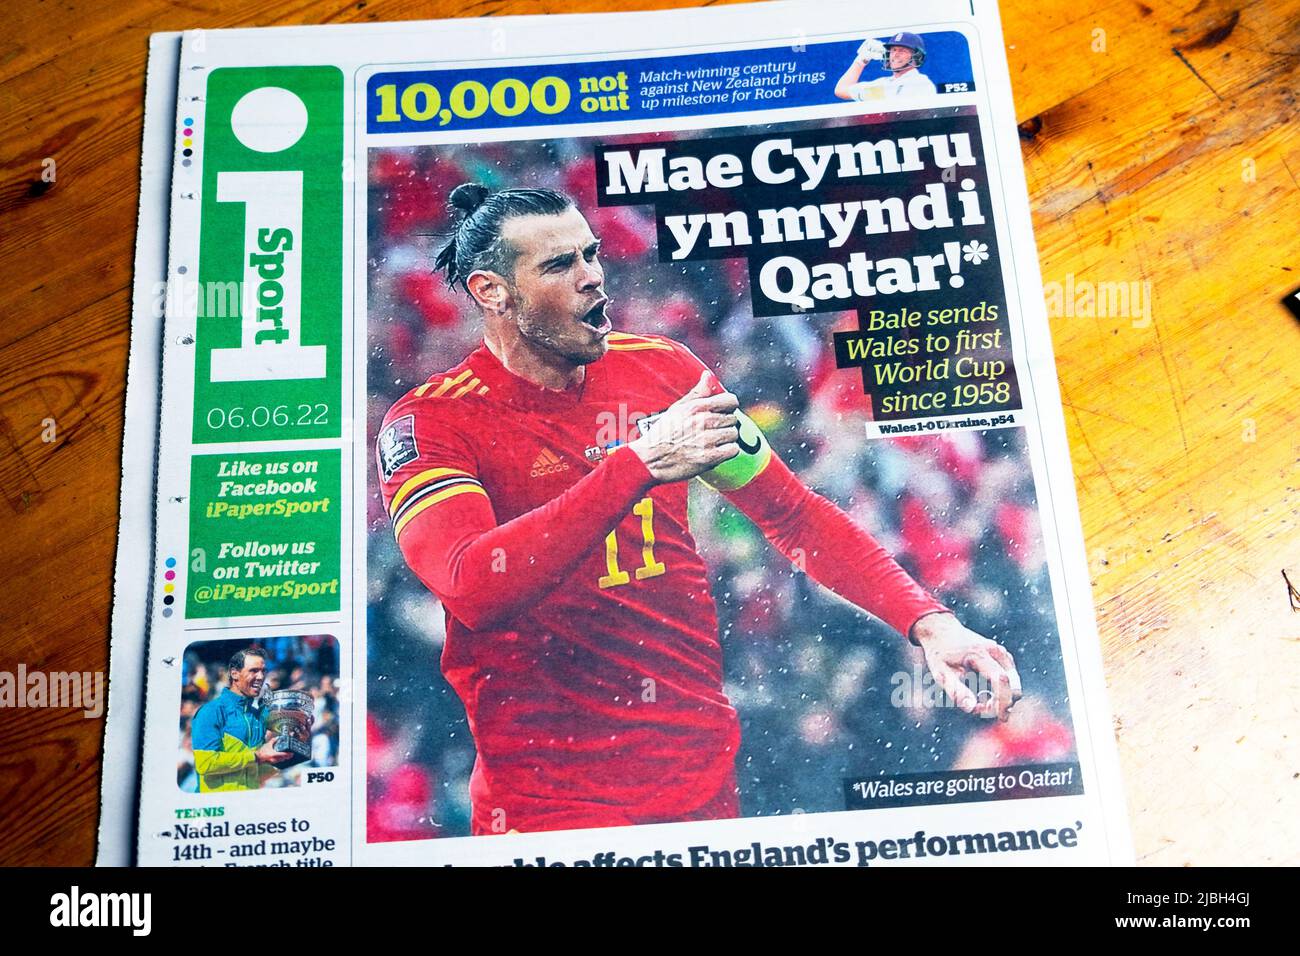 Wales gewinnt gegen den ukrainischen Fußball Gareth Bale Cymru, der nach Katar fährt, und die Schlagzeile der Zeitung „qatar i“ auf der Sportseite 6. Juni 2022, nachdem er das Tor London UK gewonnen hat Stockfoto